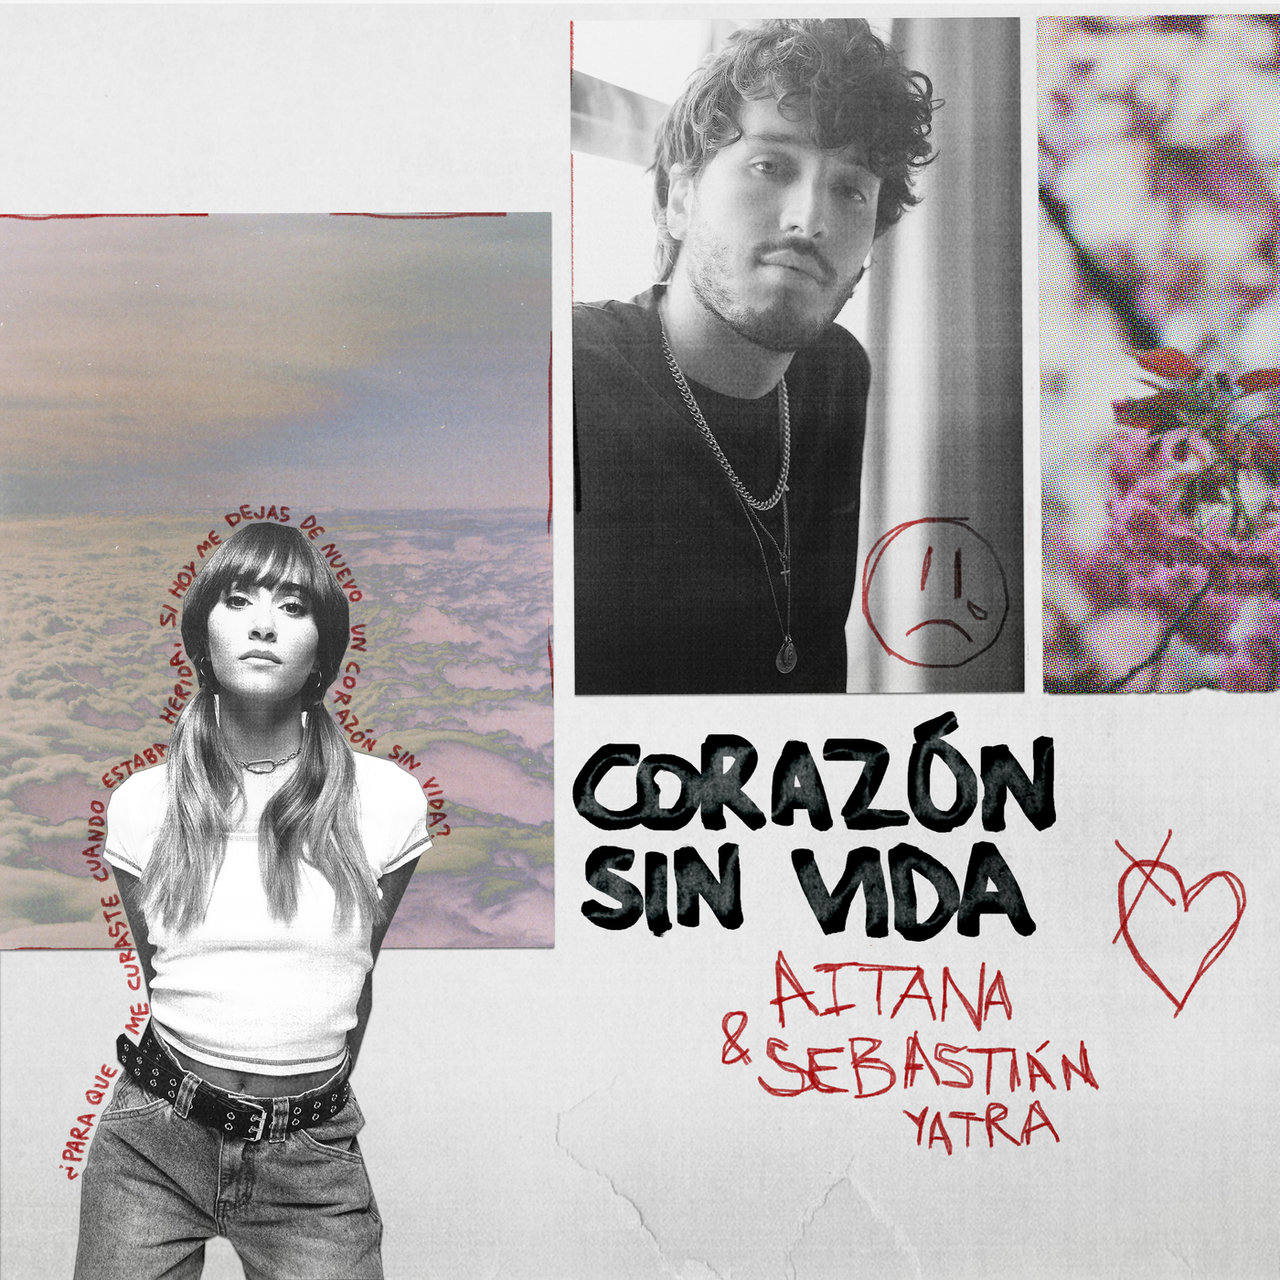 Aitana & Sebastián Yatra Corazón Sin Vida cover artwork